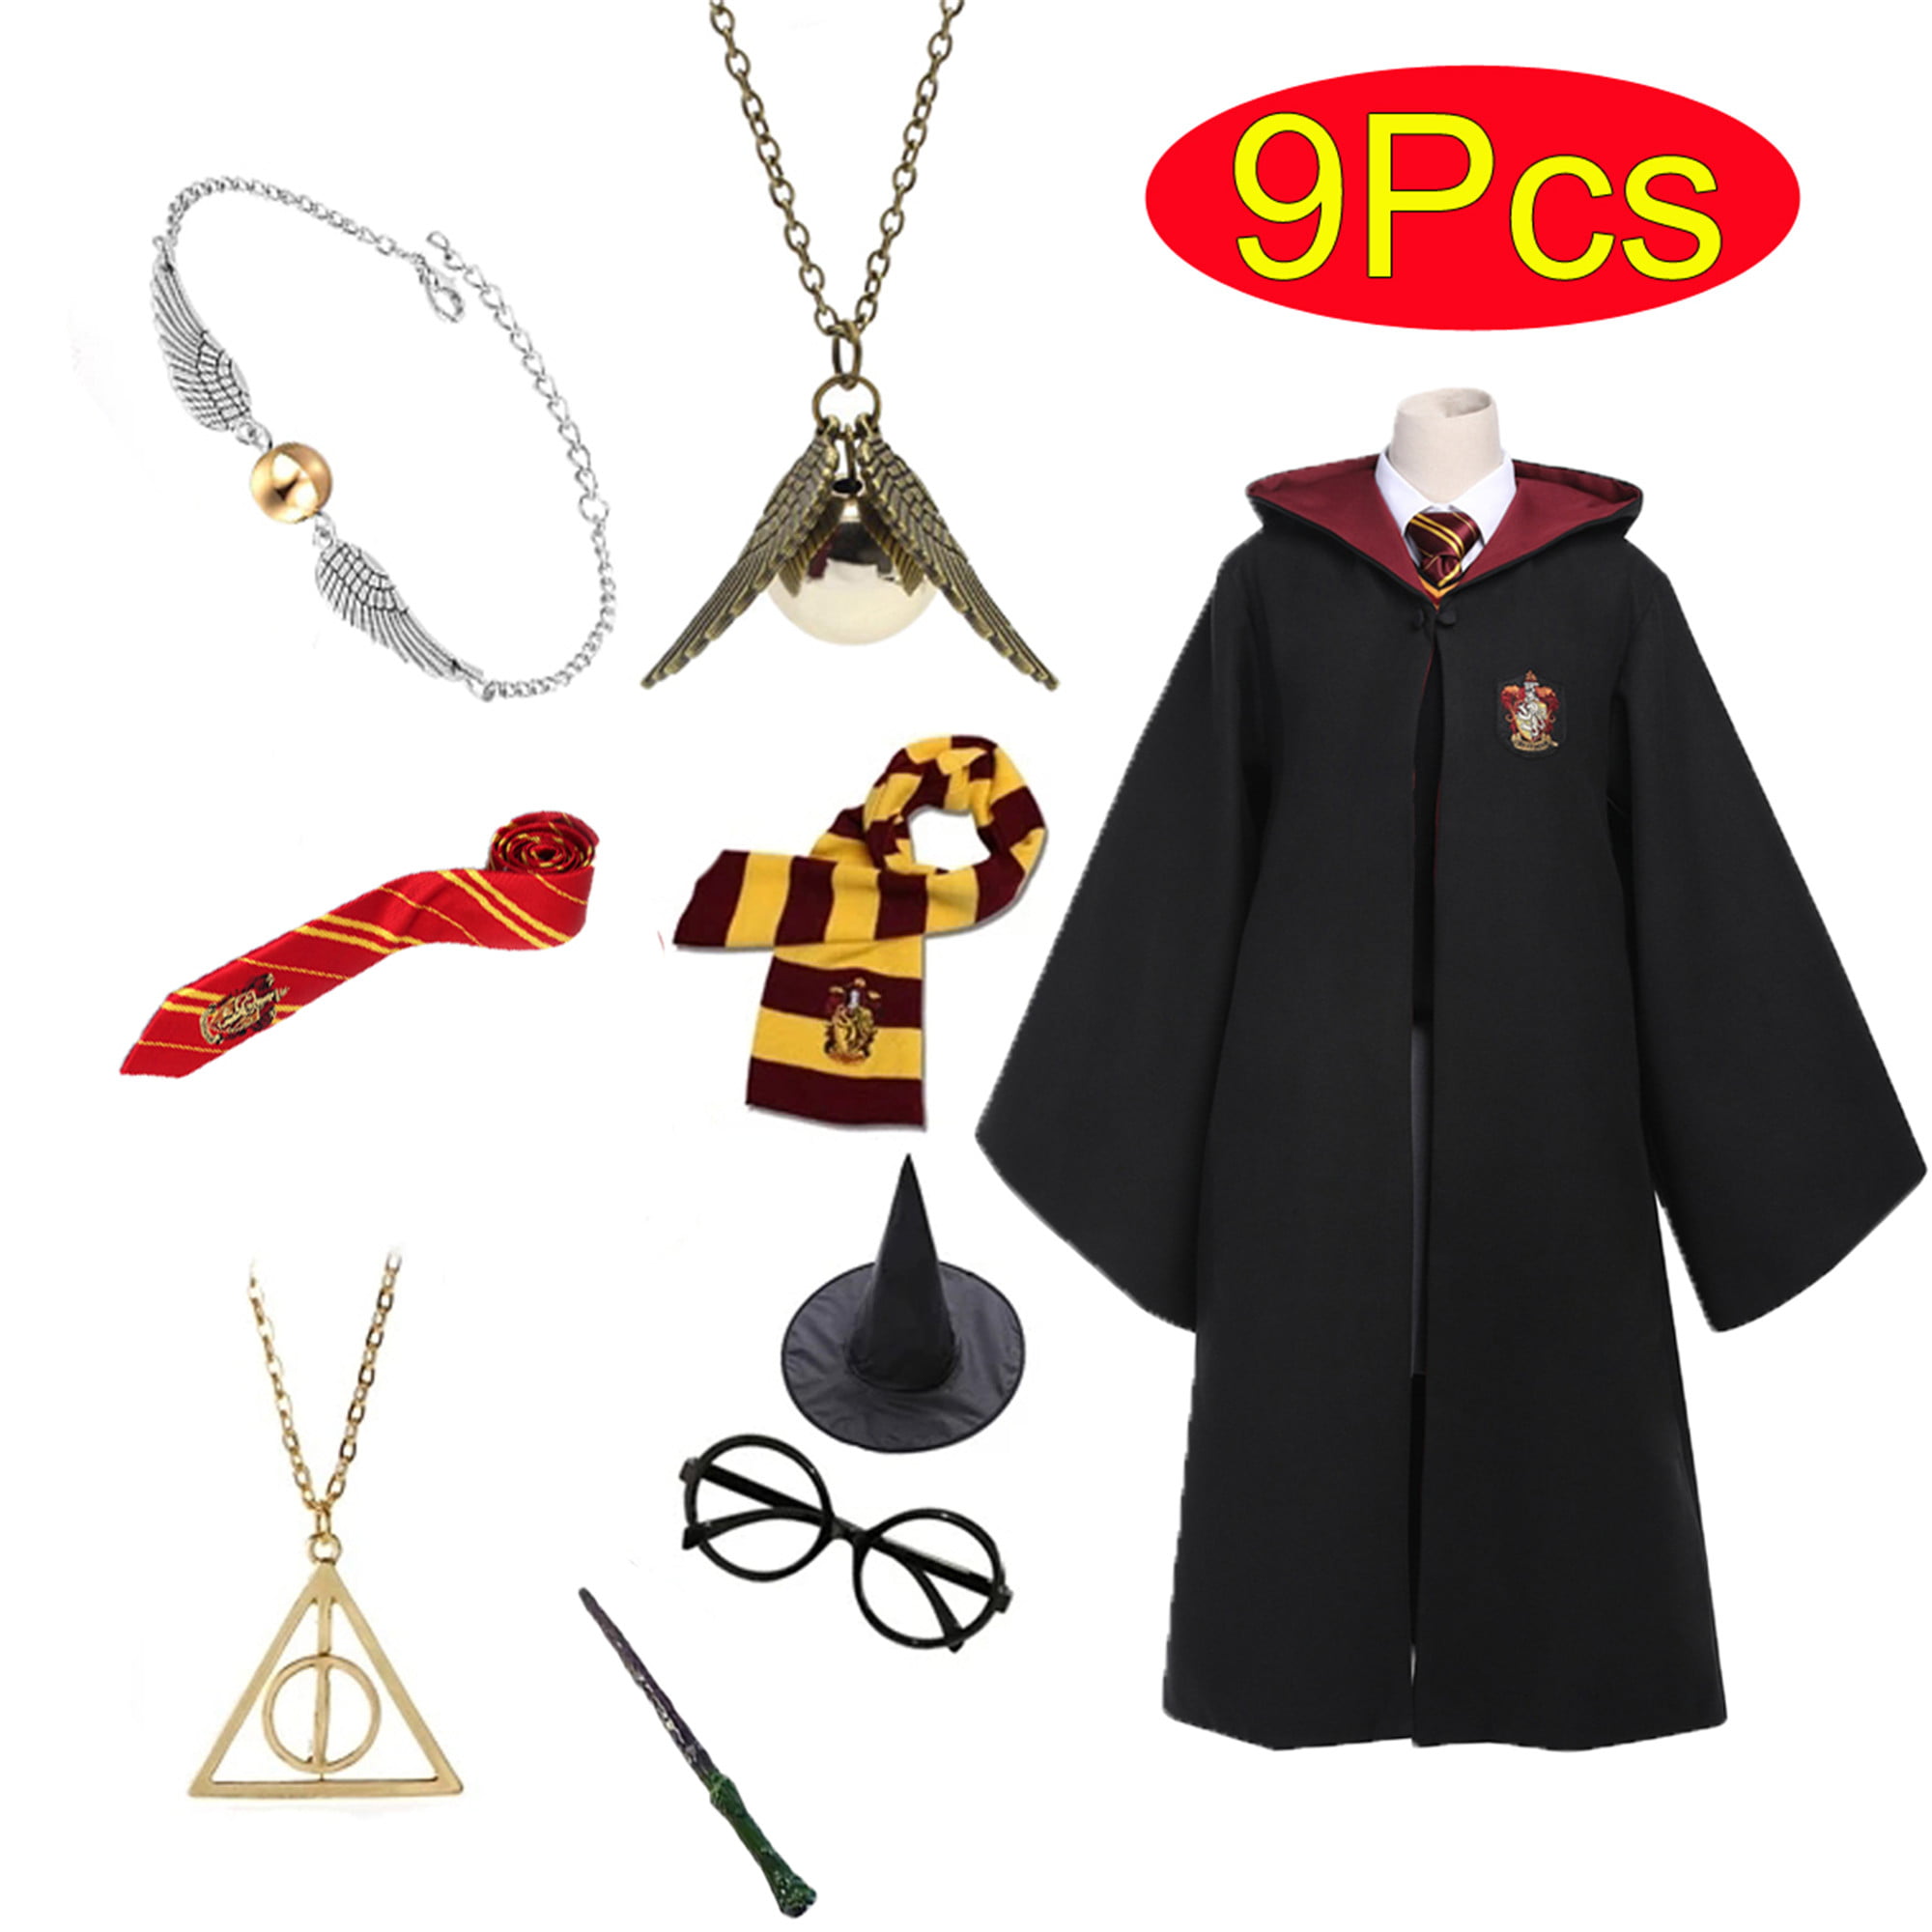 1x Harry Potter Ties Gryffindor Fancy Dress Costume Halloween Masquerade Cosplay 